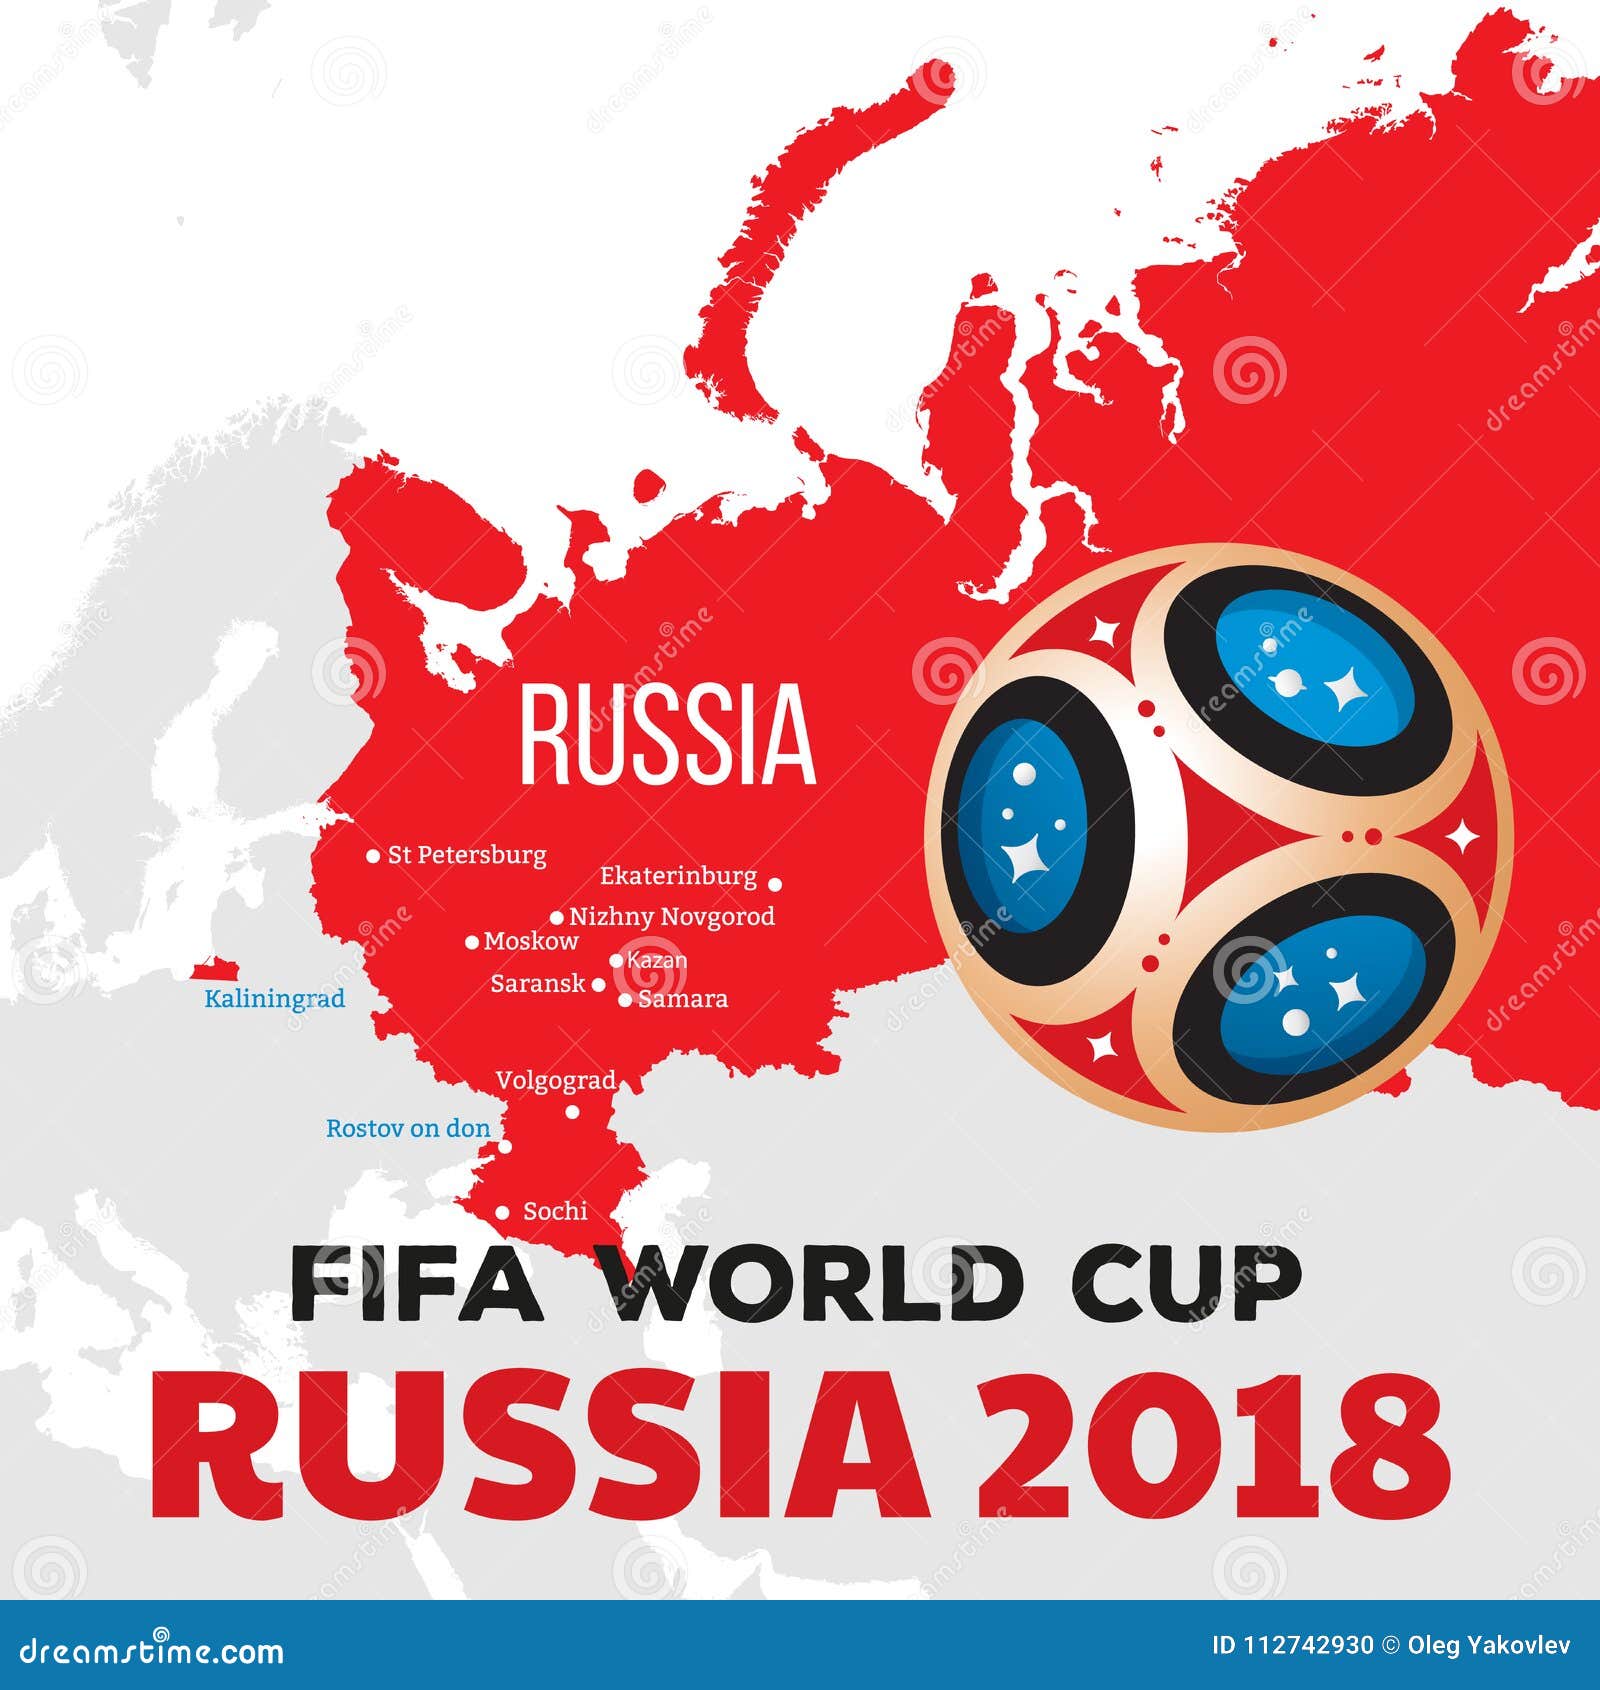 2018俄罗斯世界杯32强球衣赞助品牌盘点 - 其他联赛 - SoccerBible中文站_足球鞋_PDS情报站